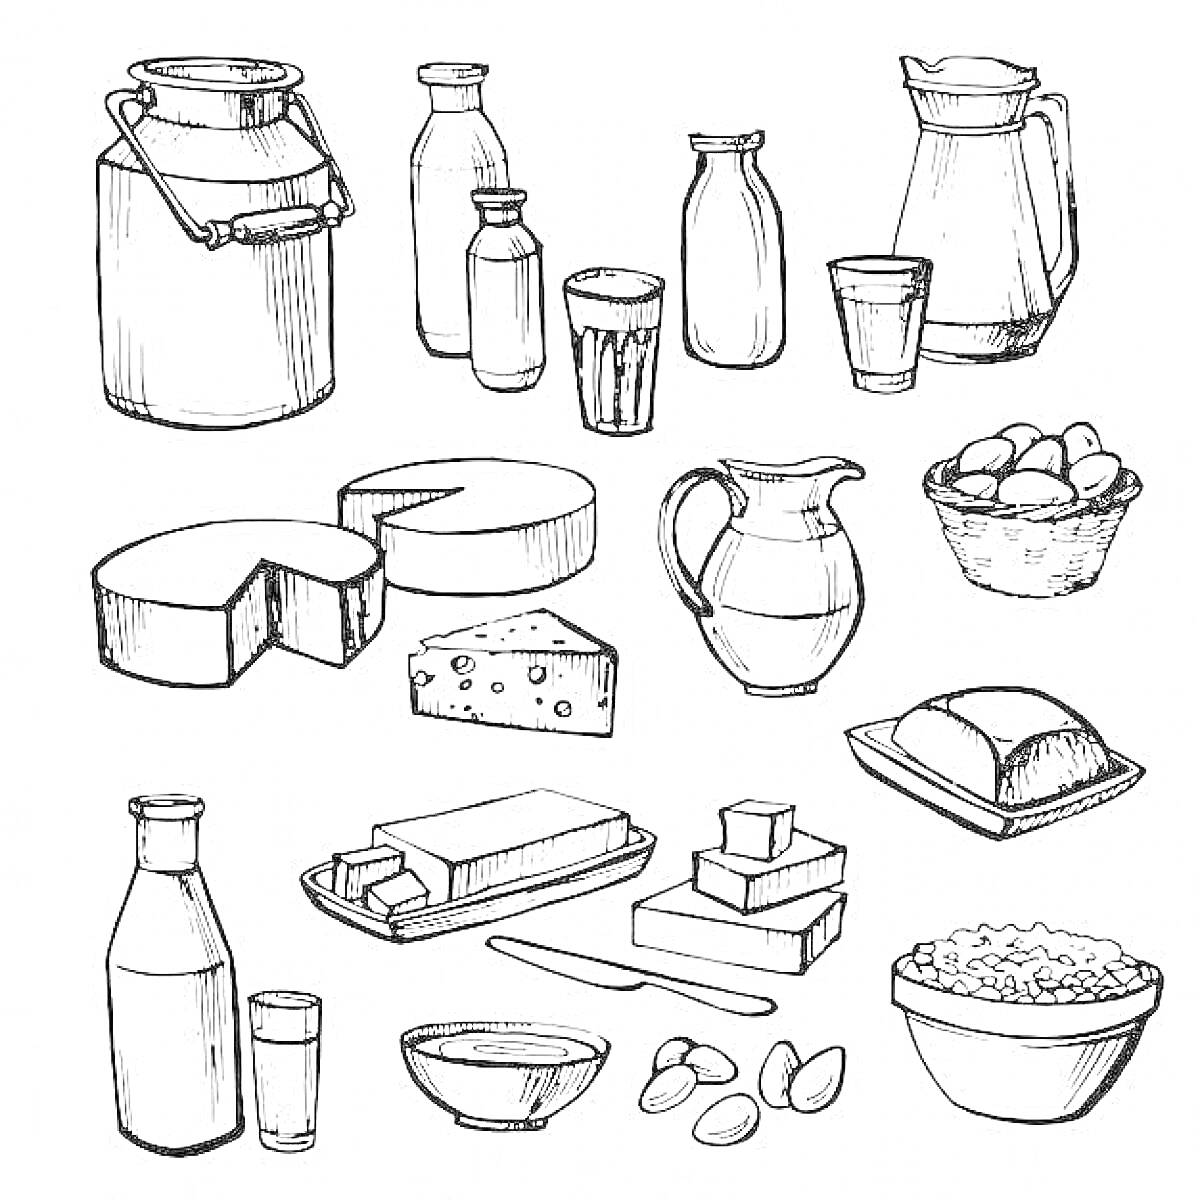 Раскраска Молочные продукты: бидон, бутылки молока, стаканы с молоком, кувшин, сыр, голландский сыр, яичница (яйца), батон хлеба, масло, йогурт, молоко, сметана, сливки, творог